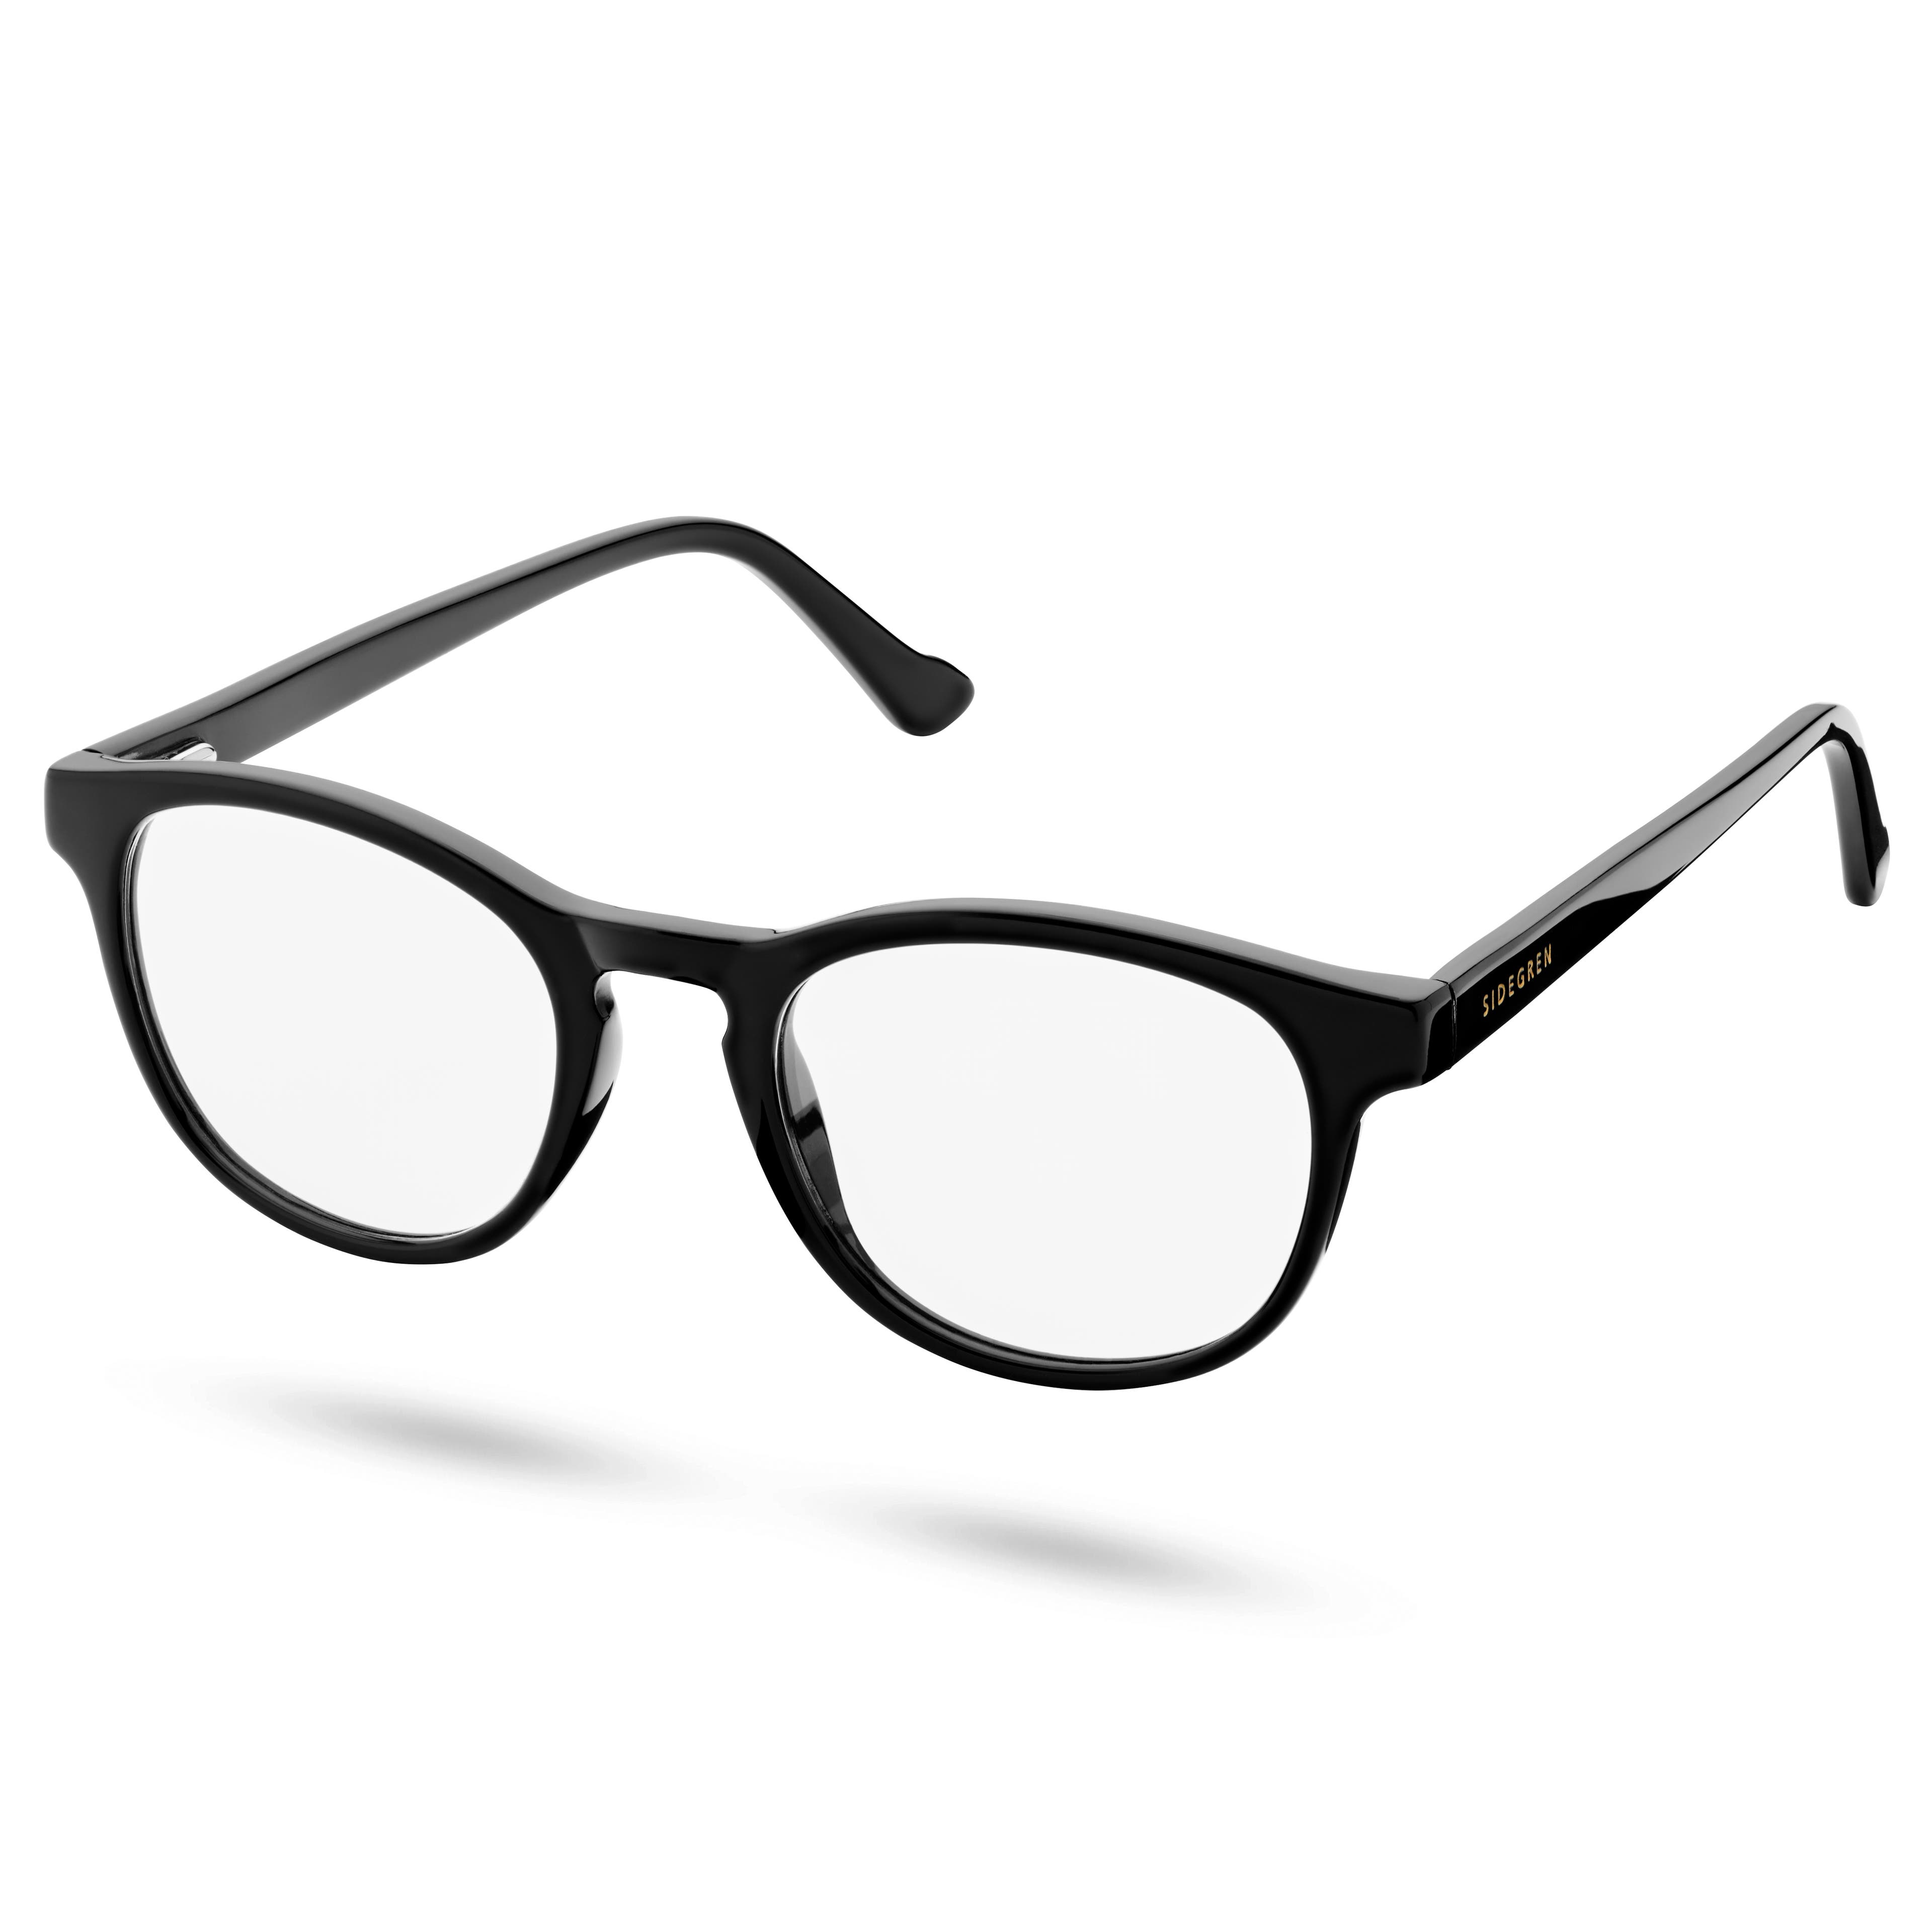 Ochelari clasici negri cu lentile transparente și filtru pentru lumină albastră